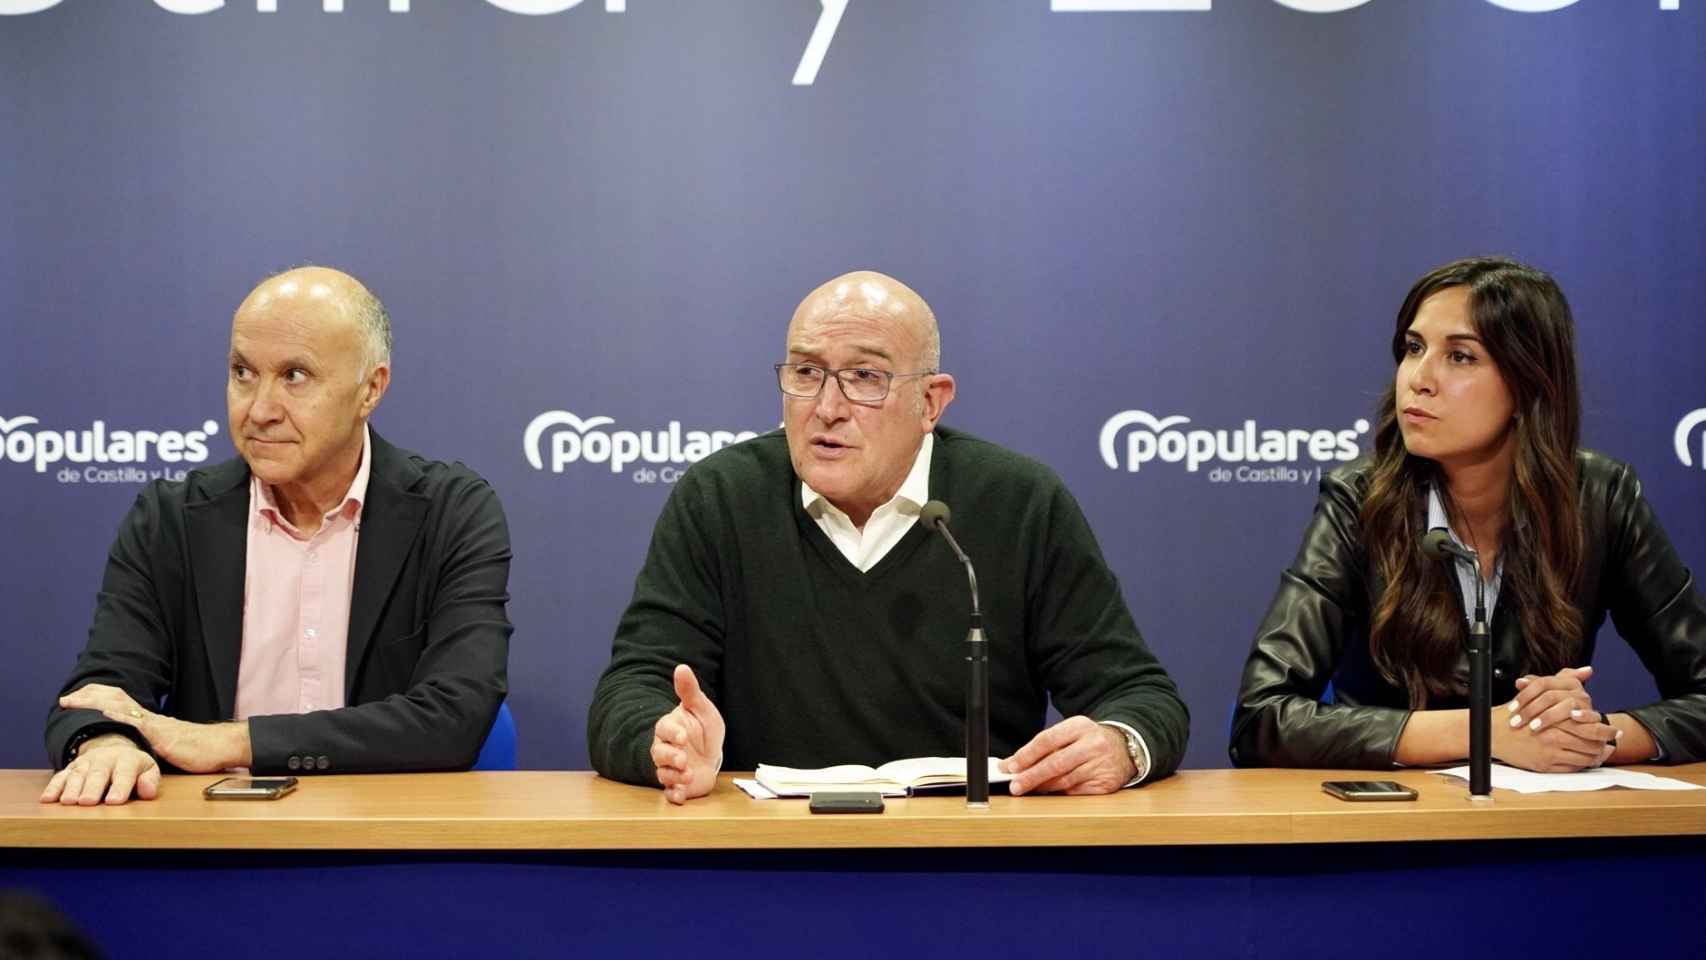 El director de campaña del PP de Valladolid, Ramiro Ruiz Medrano, el candidato, Jesús Julio Carnero, y la portavoz de campaña, Blanca Jiménez, en la rueda de prensa de este martes.